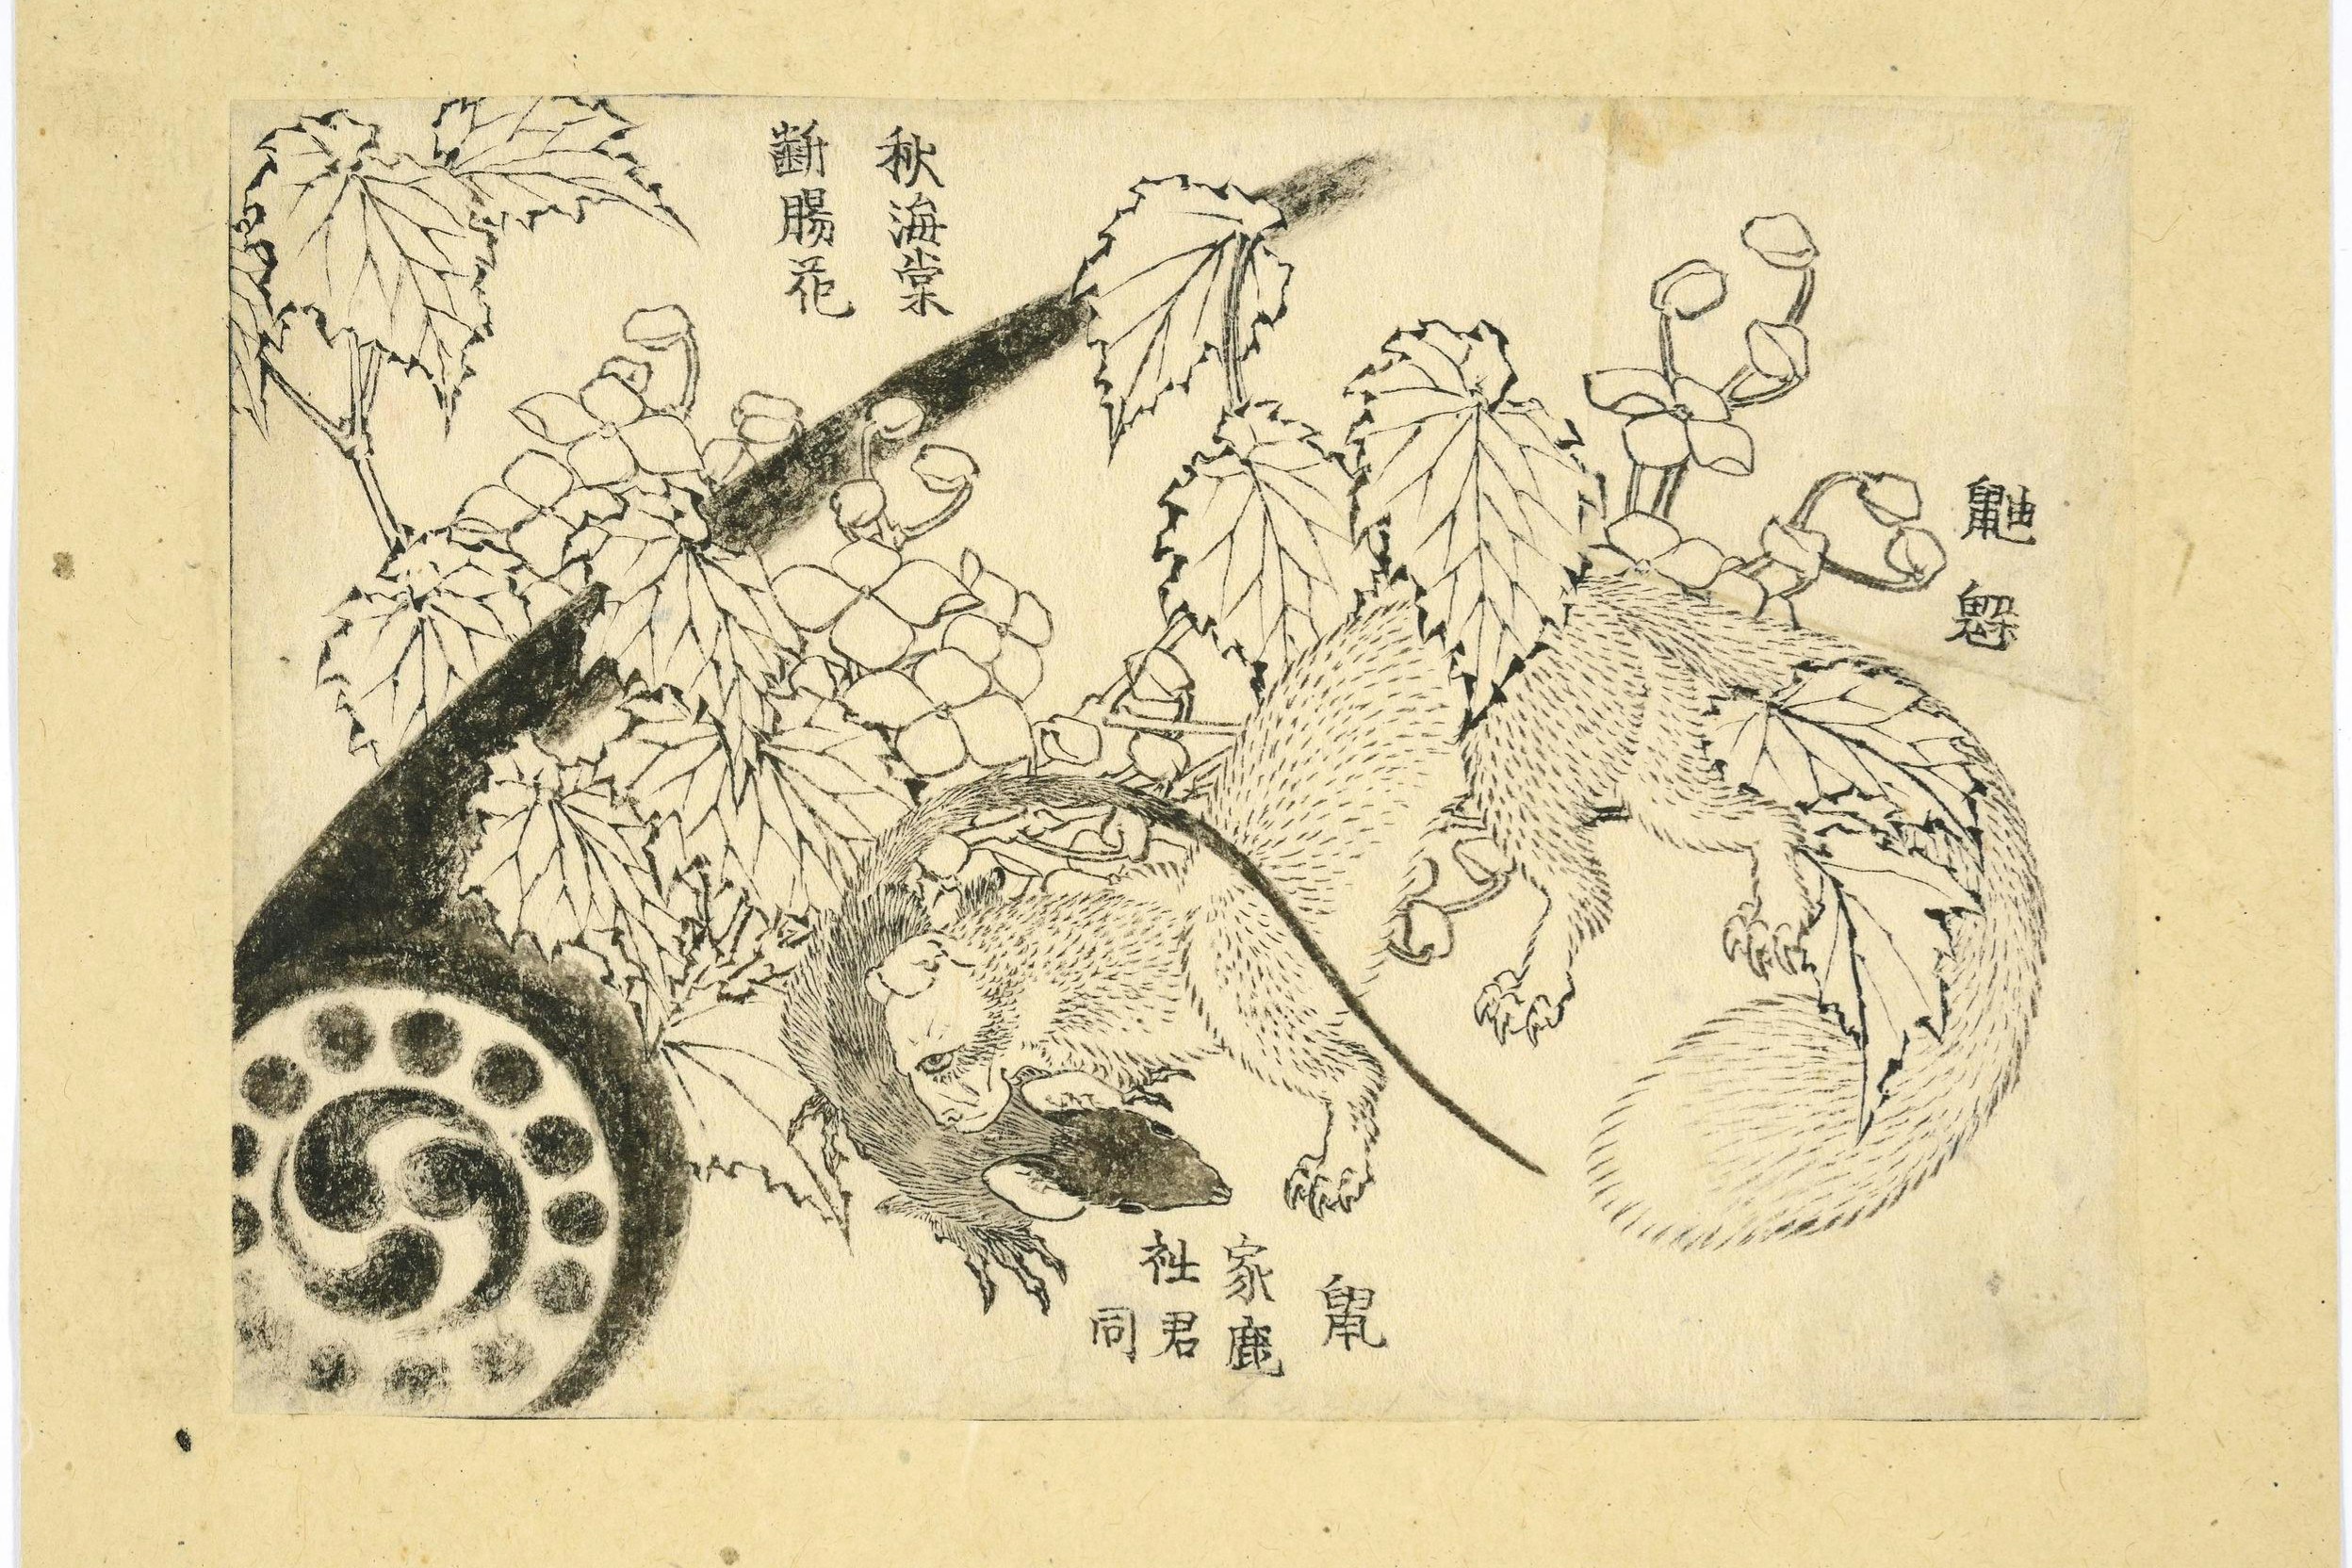 A drawing from 1829 by Katsushika Hokusai